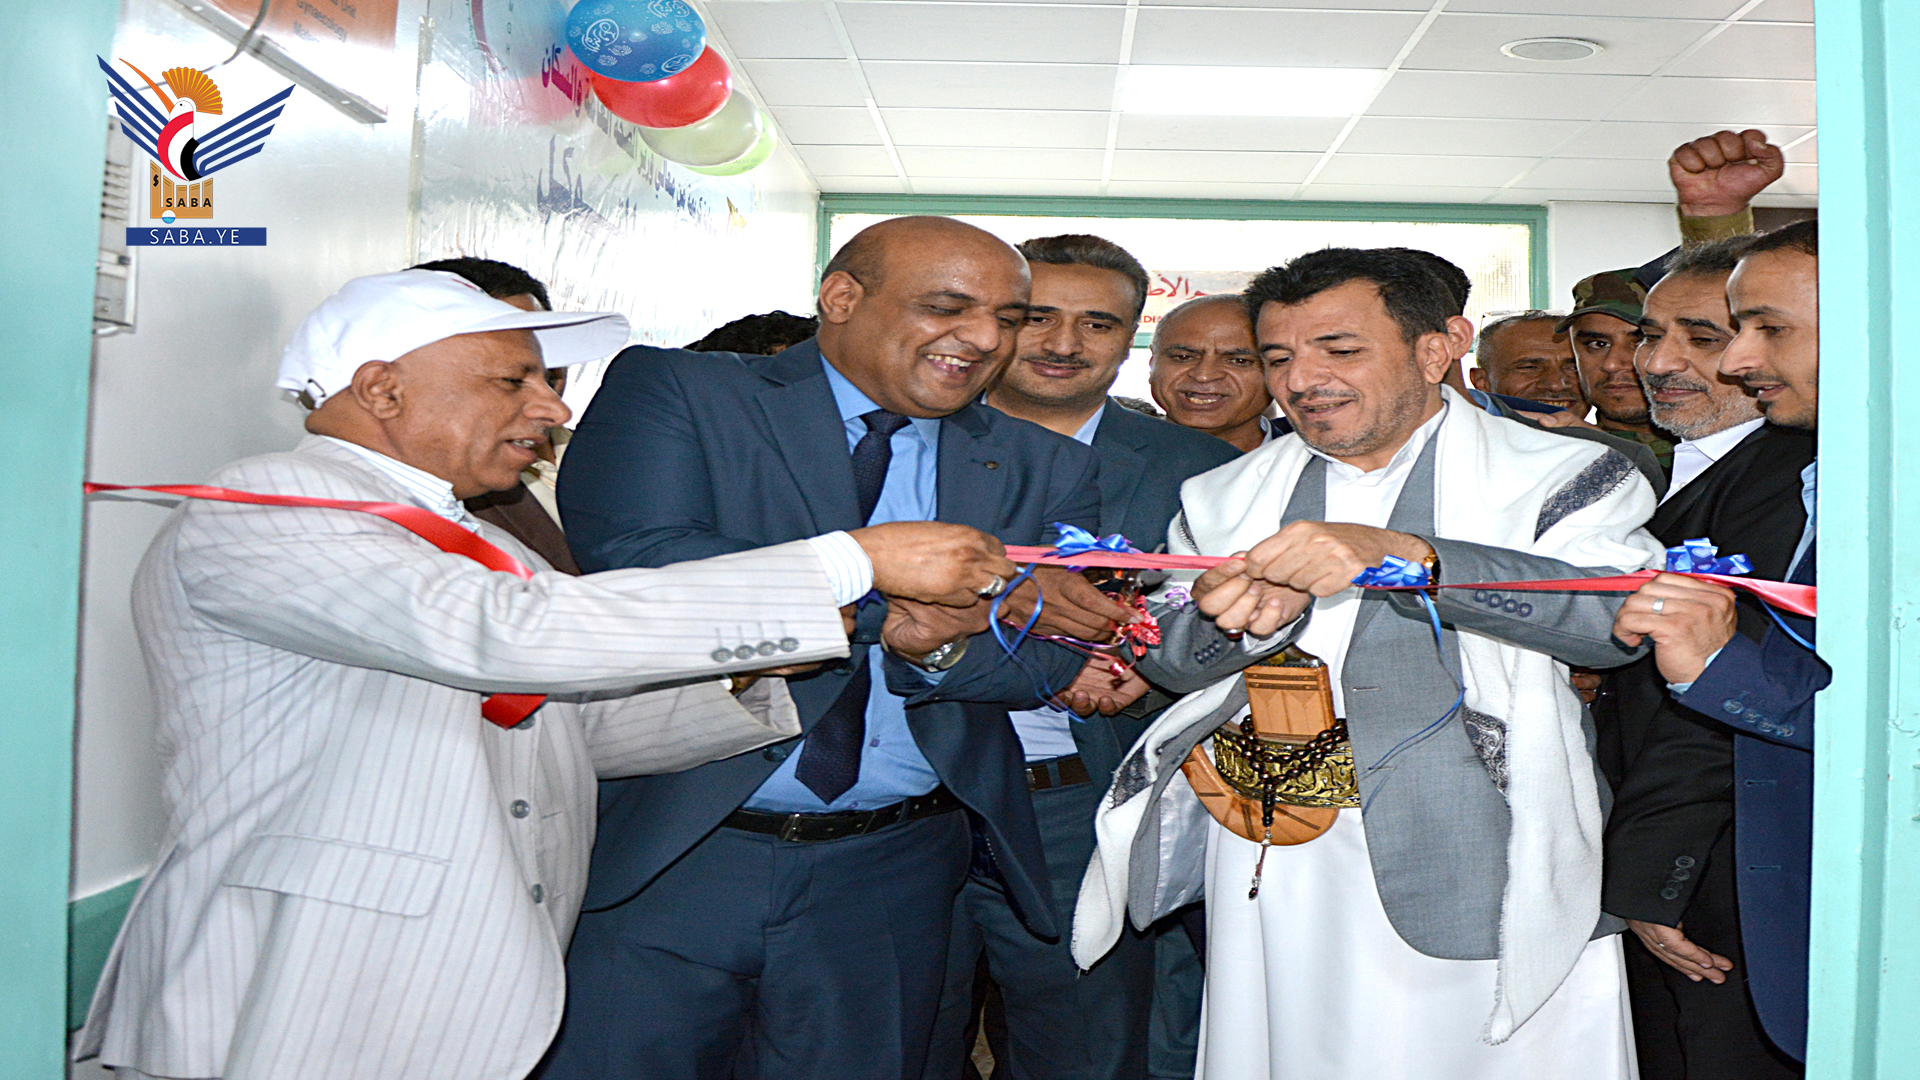 Gesundheitsminister weiht Erweiterungsprojekte der Krankenhausbehörde Al-Thawra in Sanaa ein